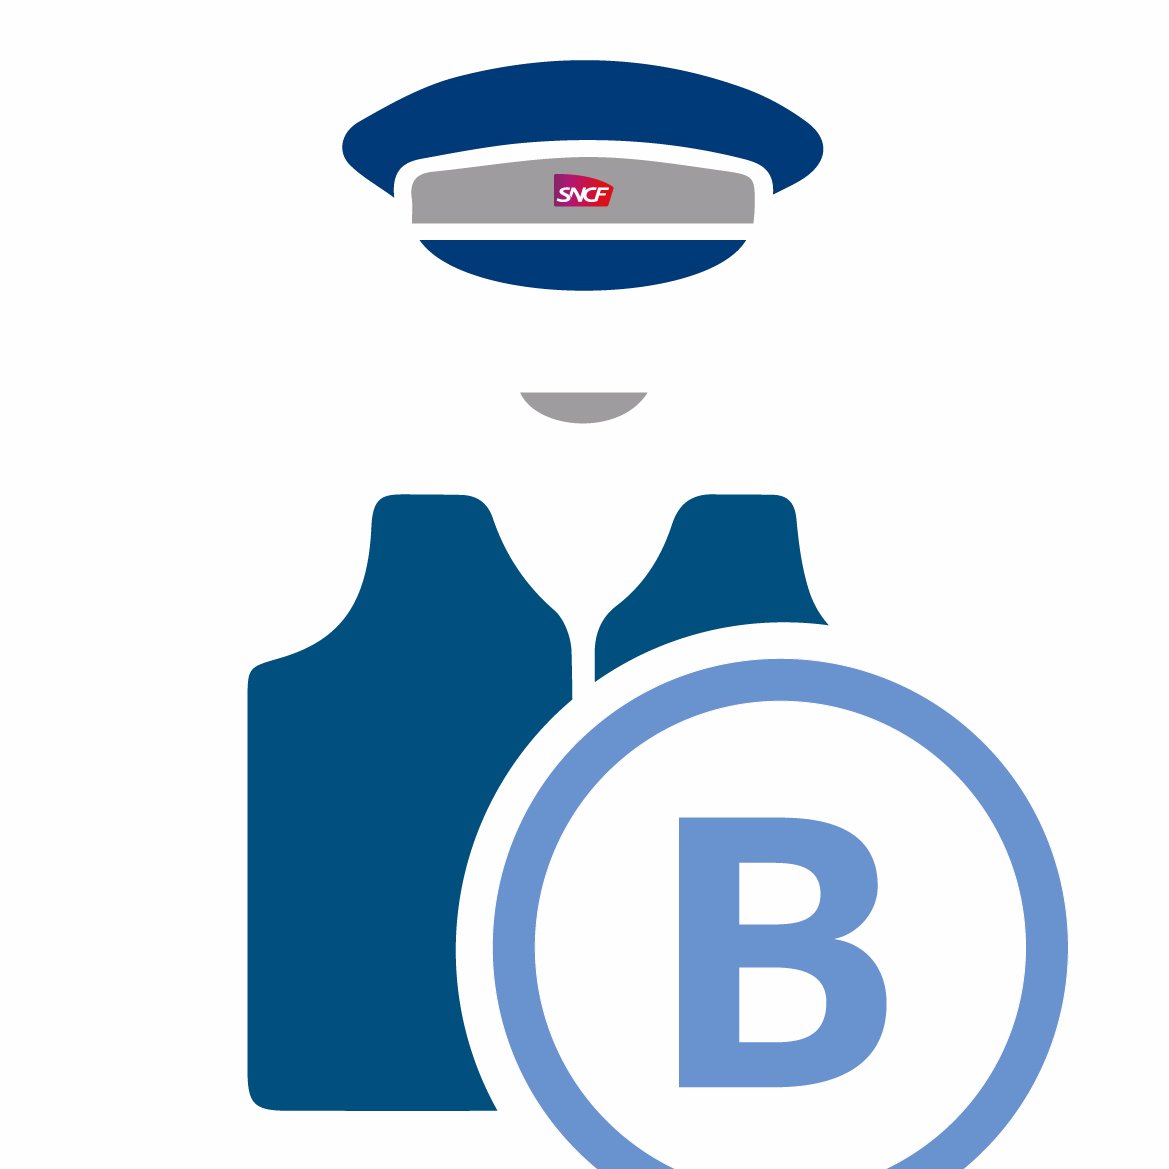 Les agents SNCF des gares #RERB de Blanc-Mesnil, Aulnay-sous-Bois, Sevran-Beaudottes et Villepinte sont chaque jour à votre service pour faciliter votre voyage